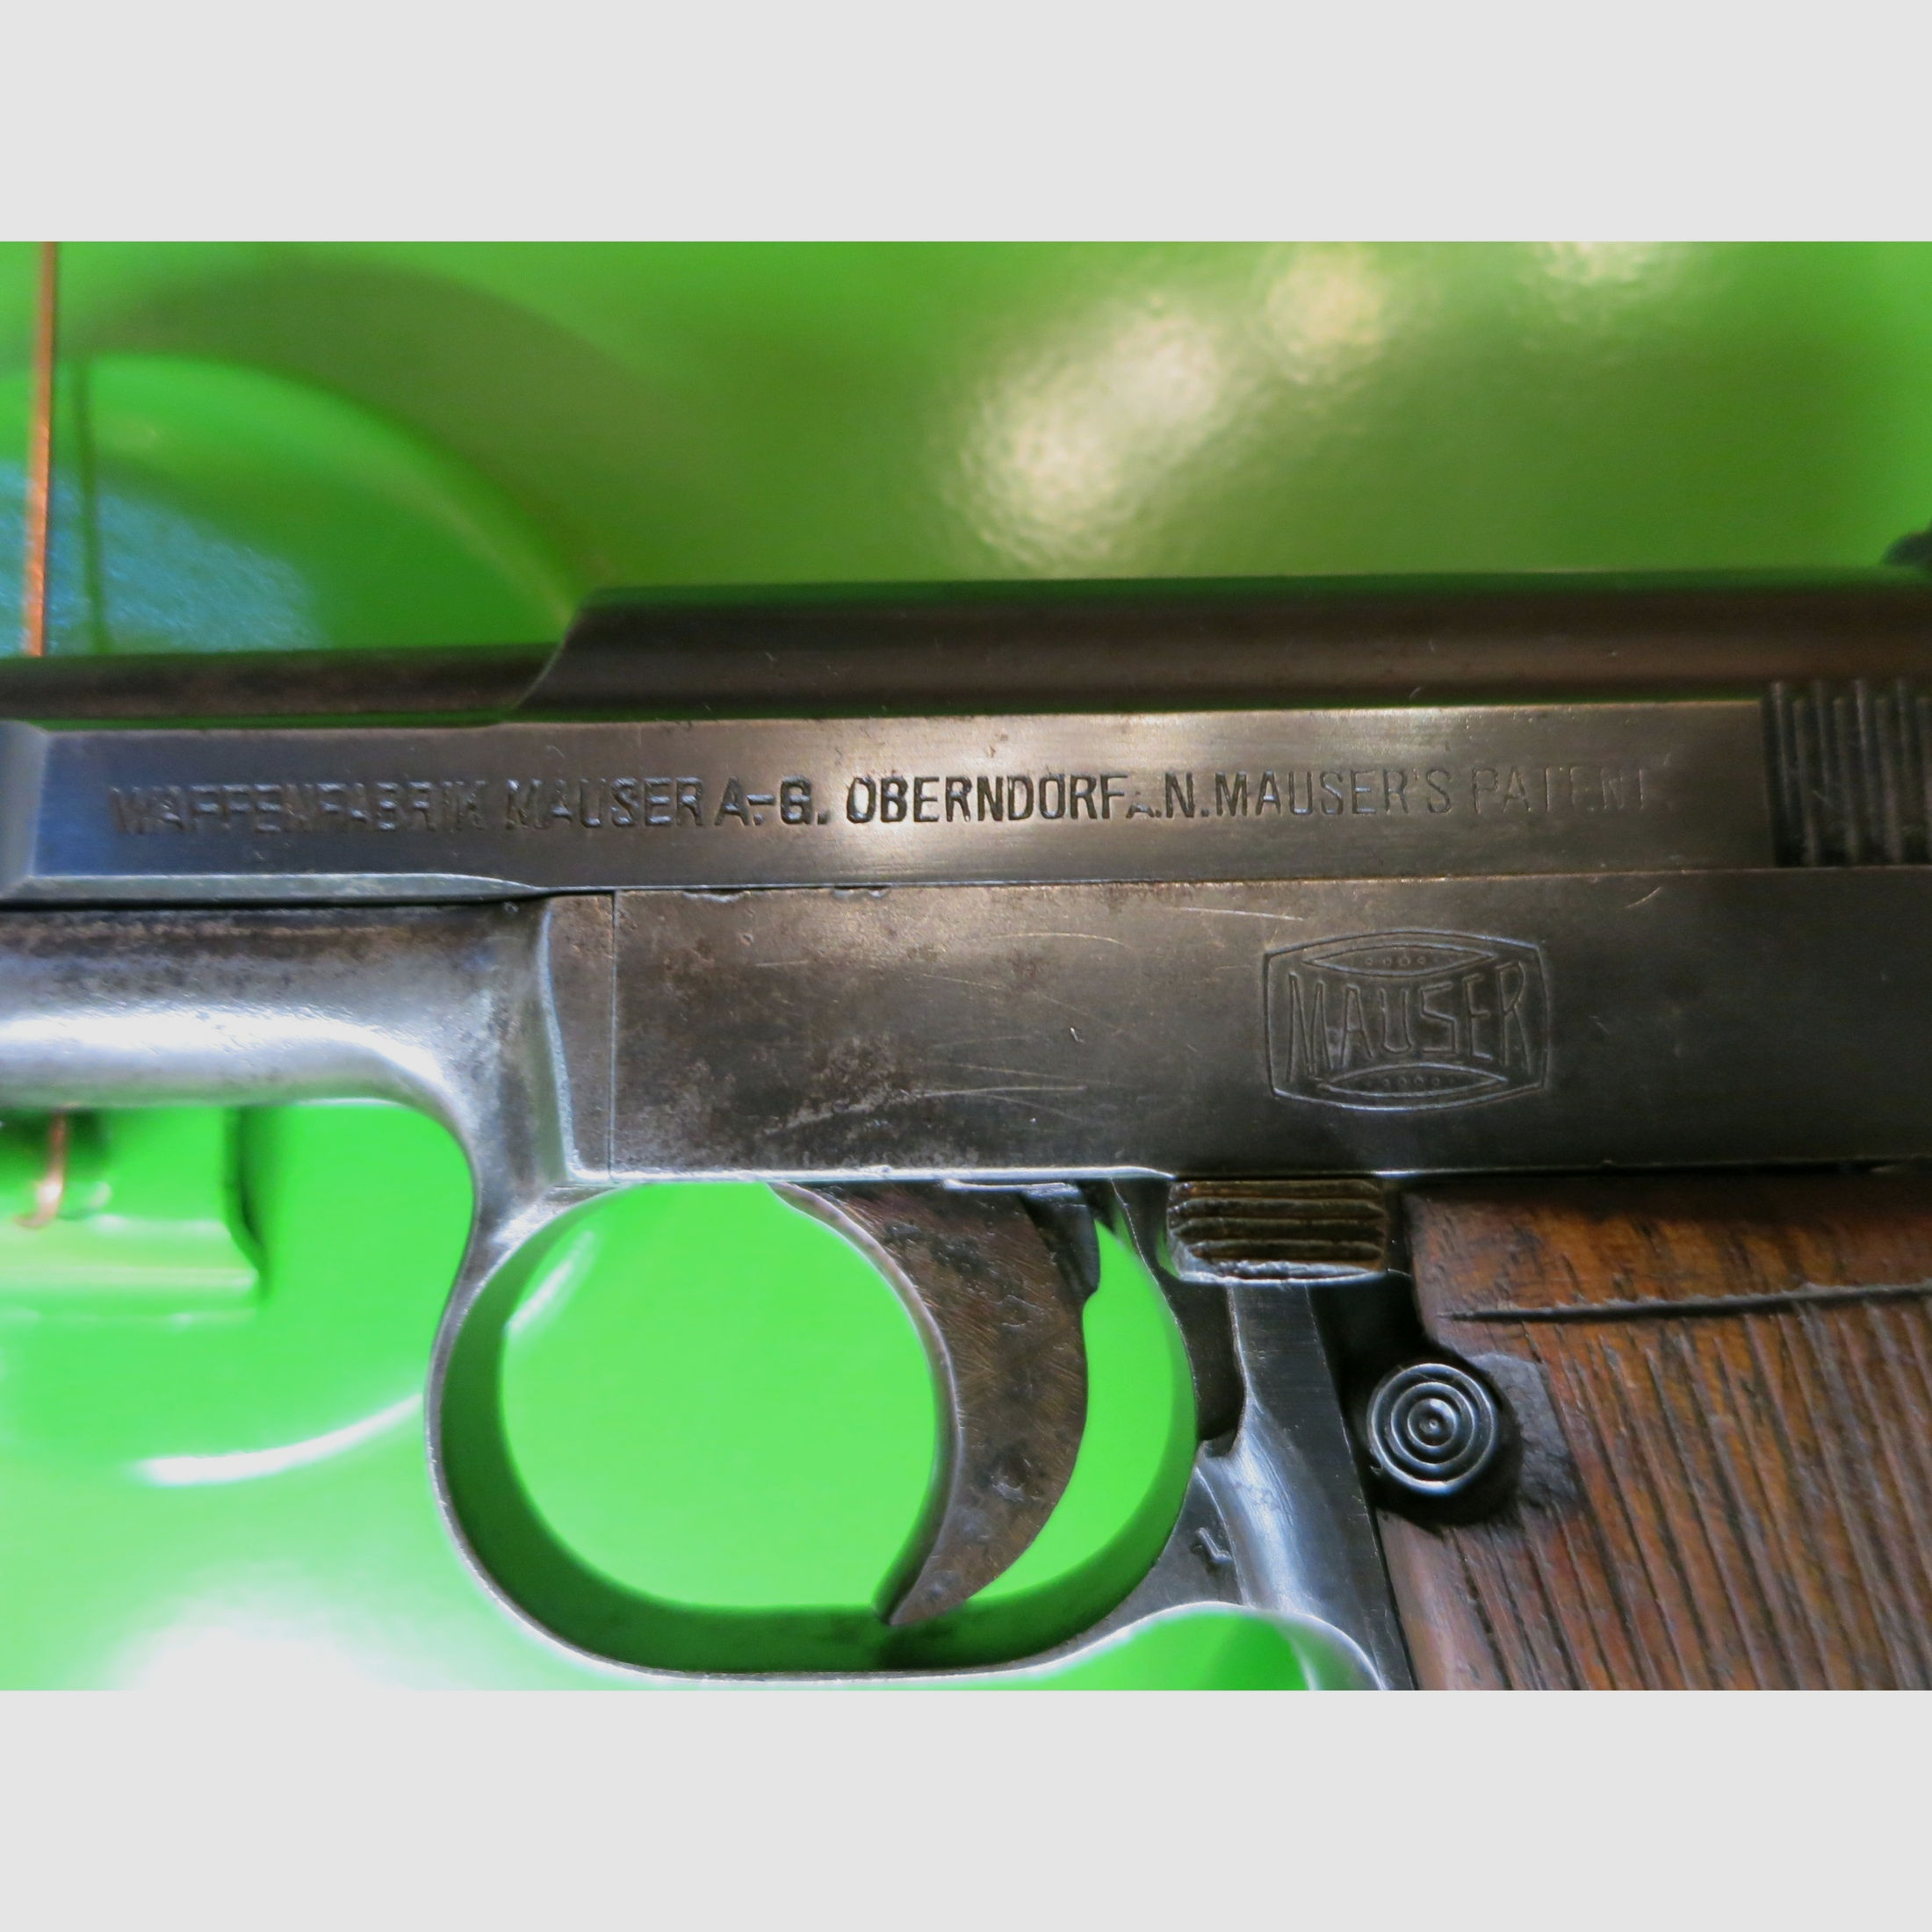 WAFFENFABRIK MAUSER A.G. OBERNDORF A.N. MAUSER'S PATENT, Modell 1910 / M10, Kal.6,35 mm Browning       #97